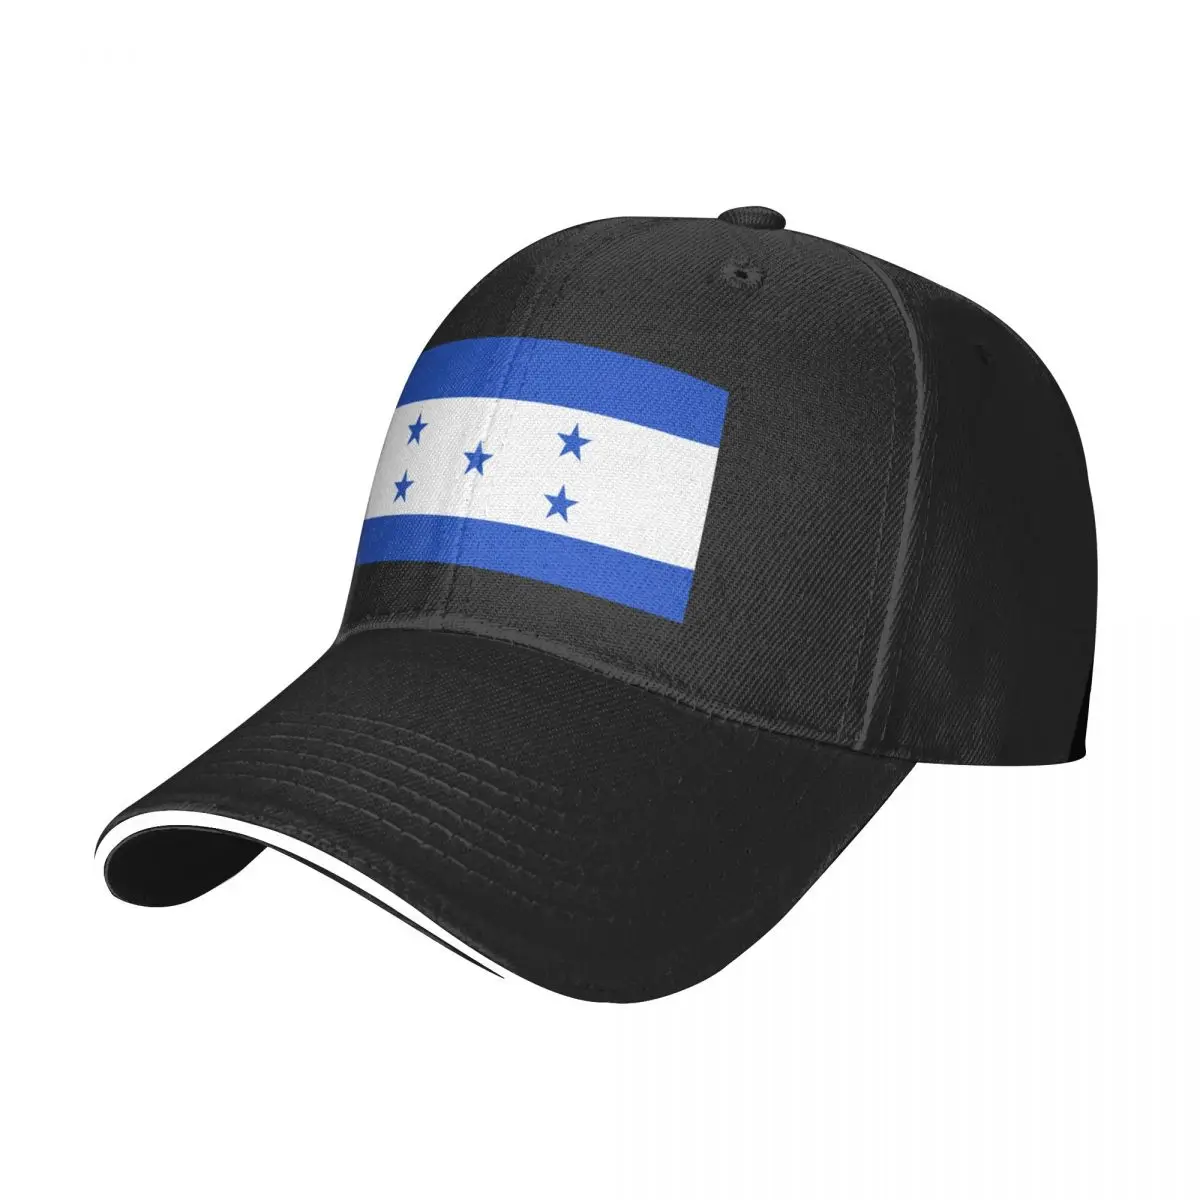 Новая бейсбольная кепка с флагом Гондураса, бейсболка, роскошная кепка, шляпы для девочек в стиле хип-хоп, мужские кепки